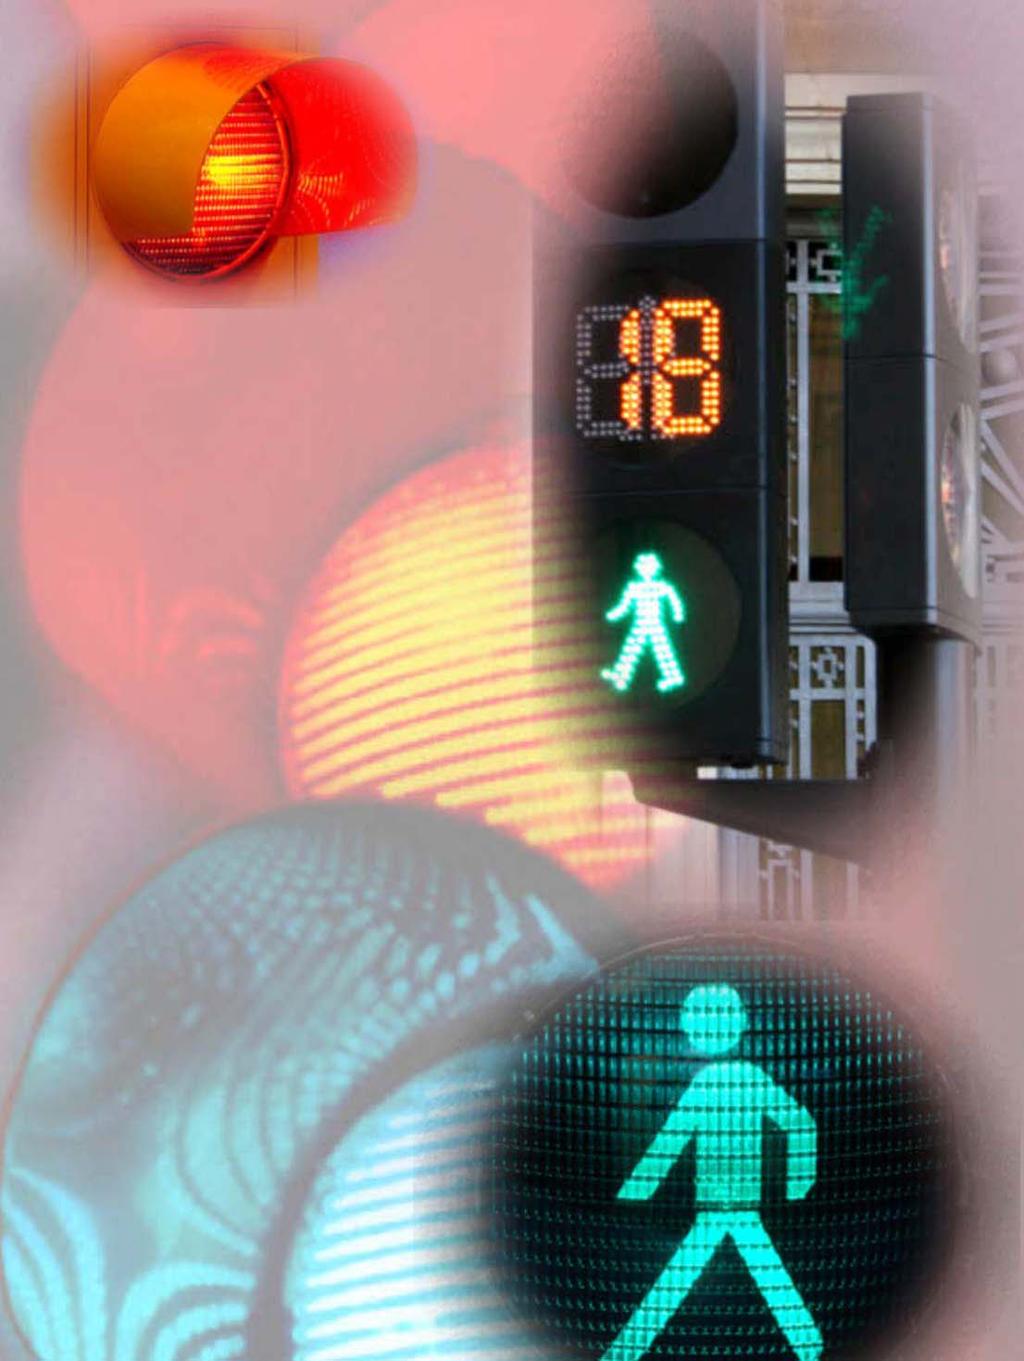 Semáforos Semáforos Convencionales Semáforos FUTURLED Semáforos PVC SEMÁFOROS Página 12 Modelos S13/300 S13/300-200